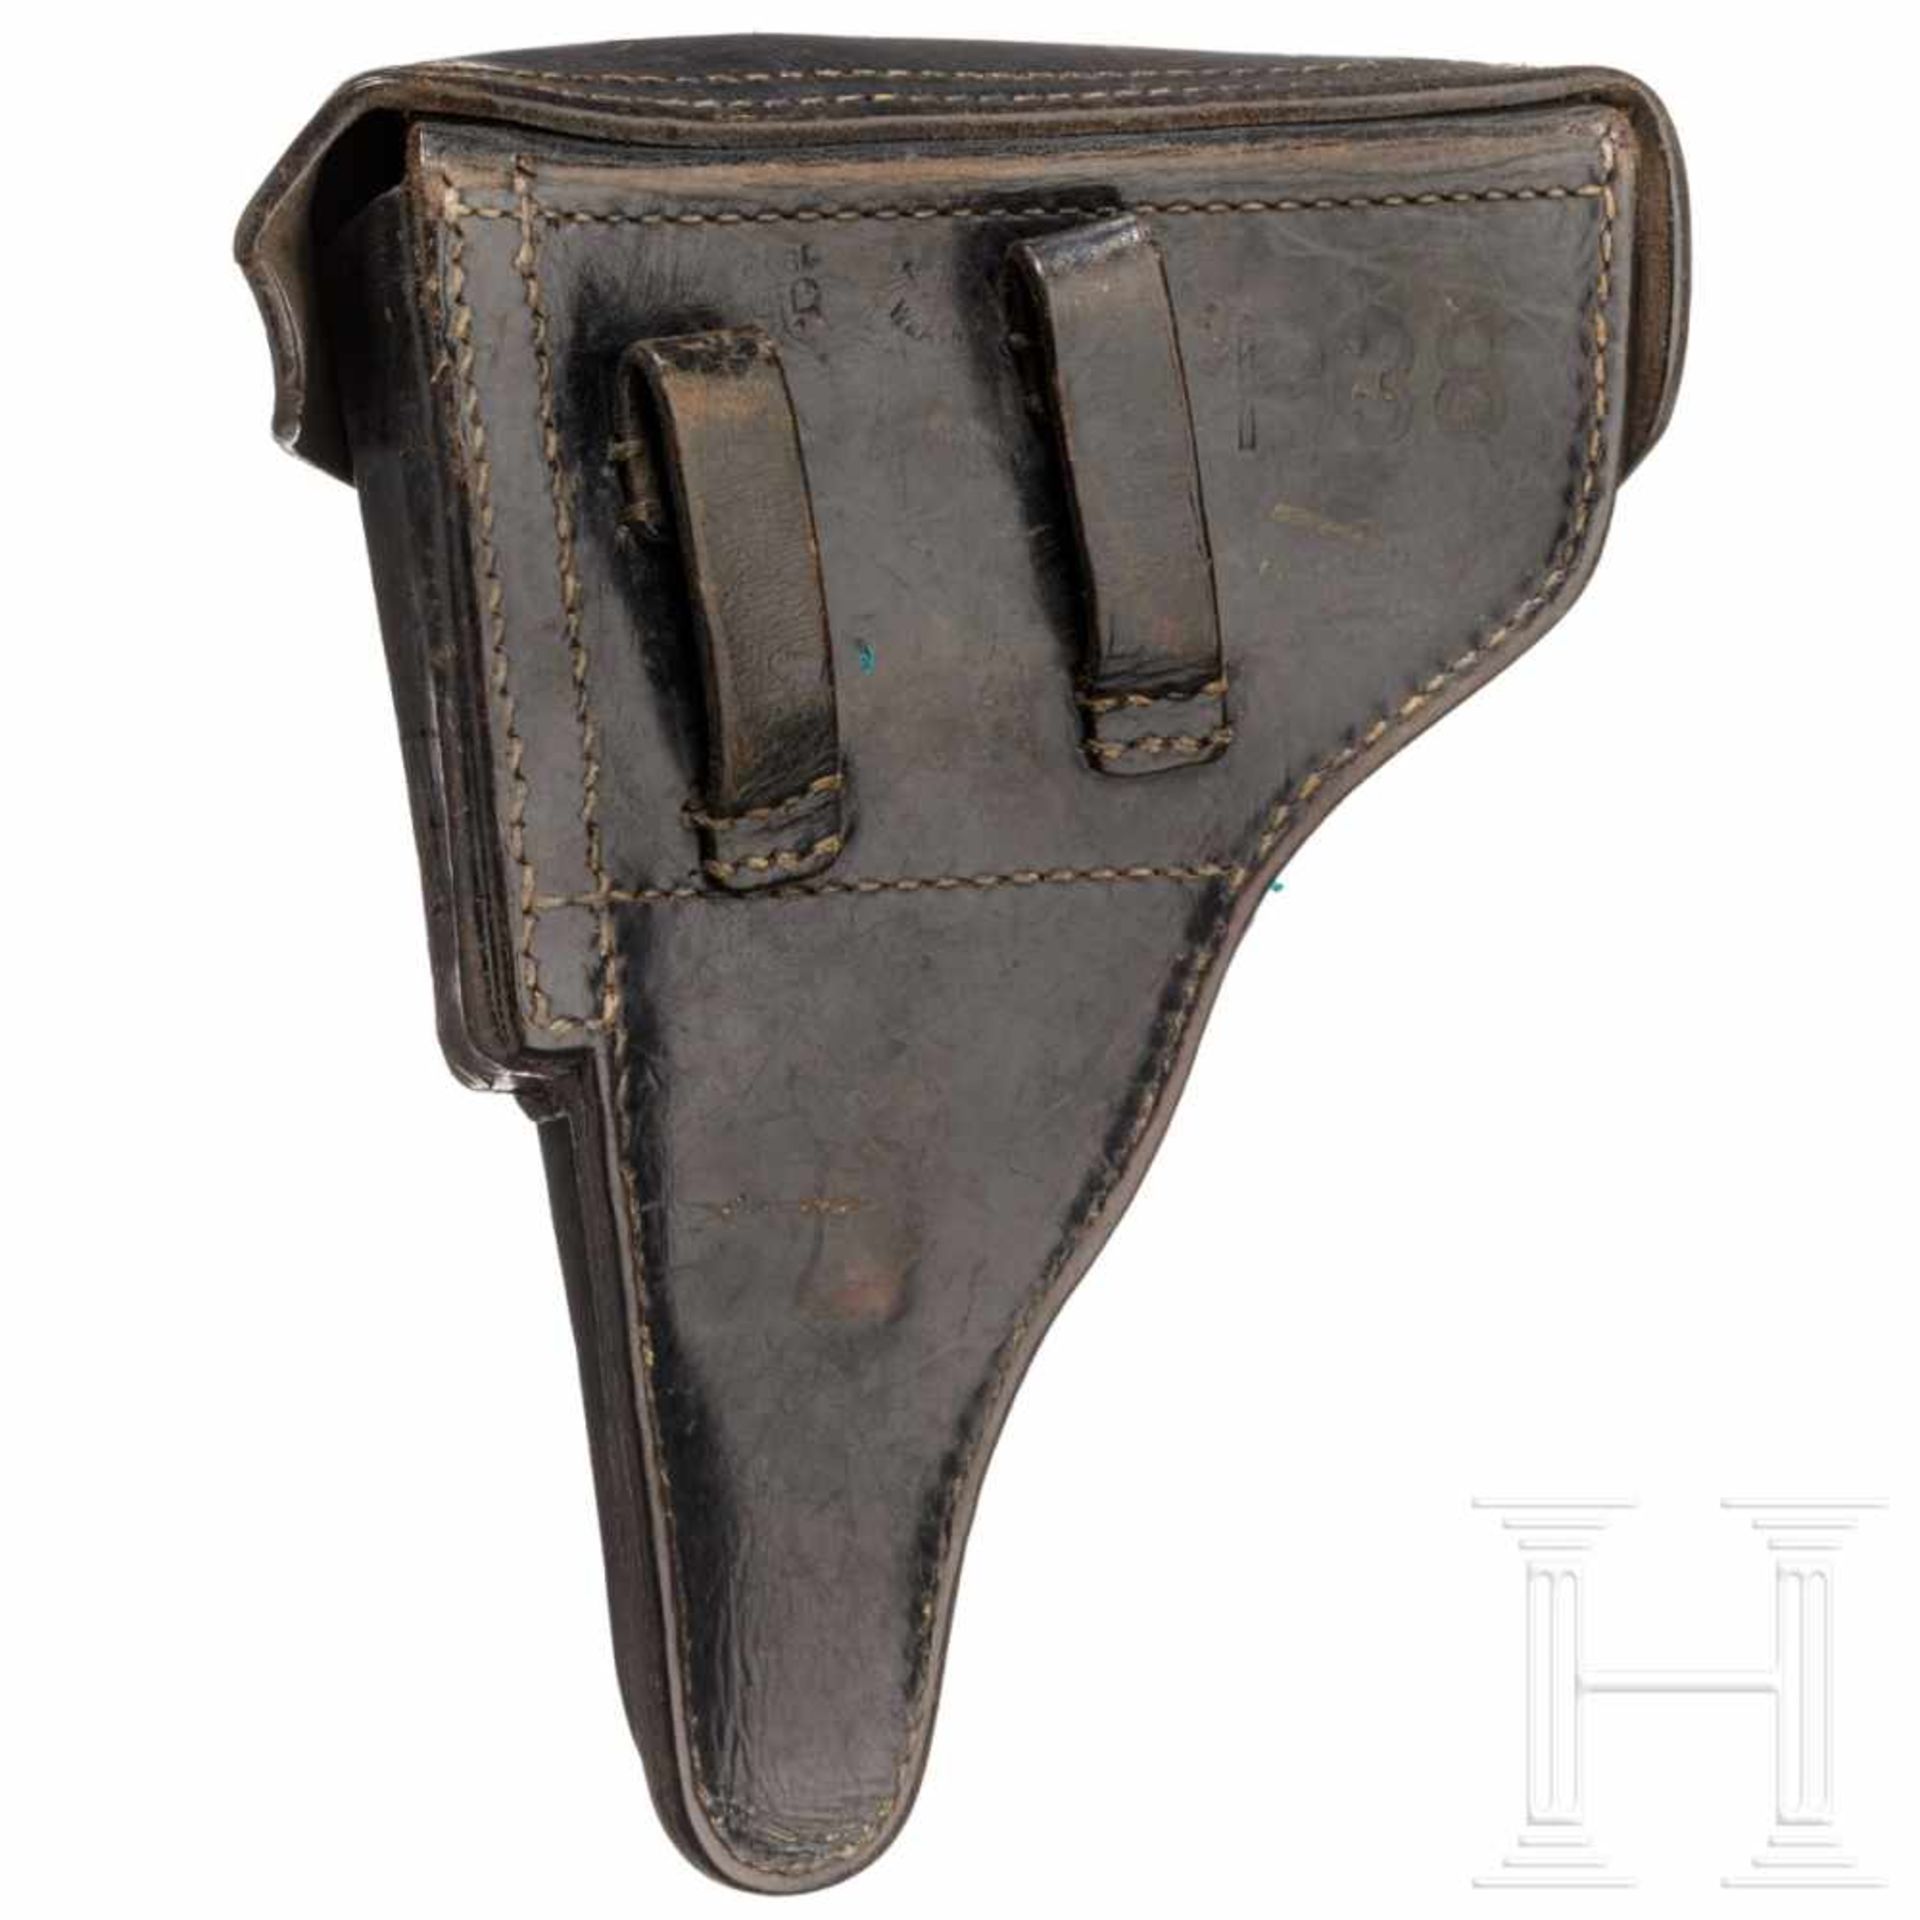 A holster for a P 38Koffertasche zur P.38, Hersteller schwer leserlich, WaA 143, alle Nähte fest, - Bild 2 aus 2